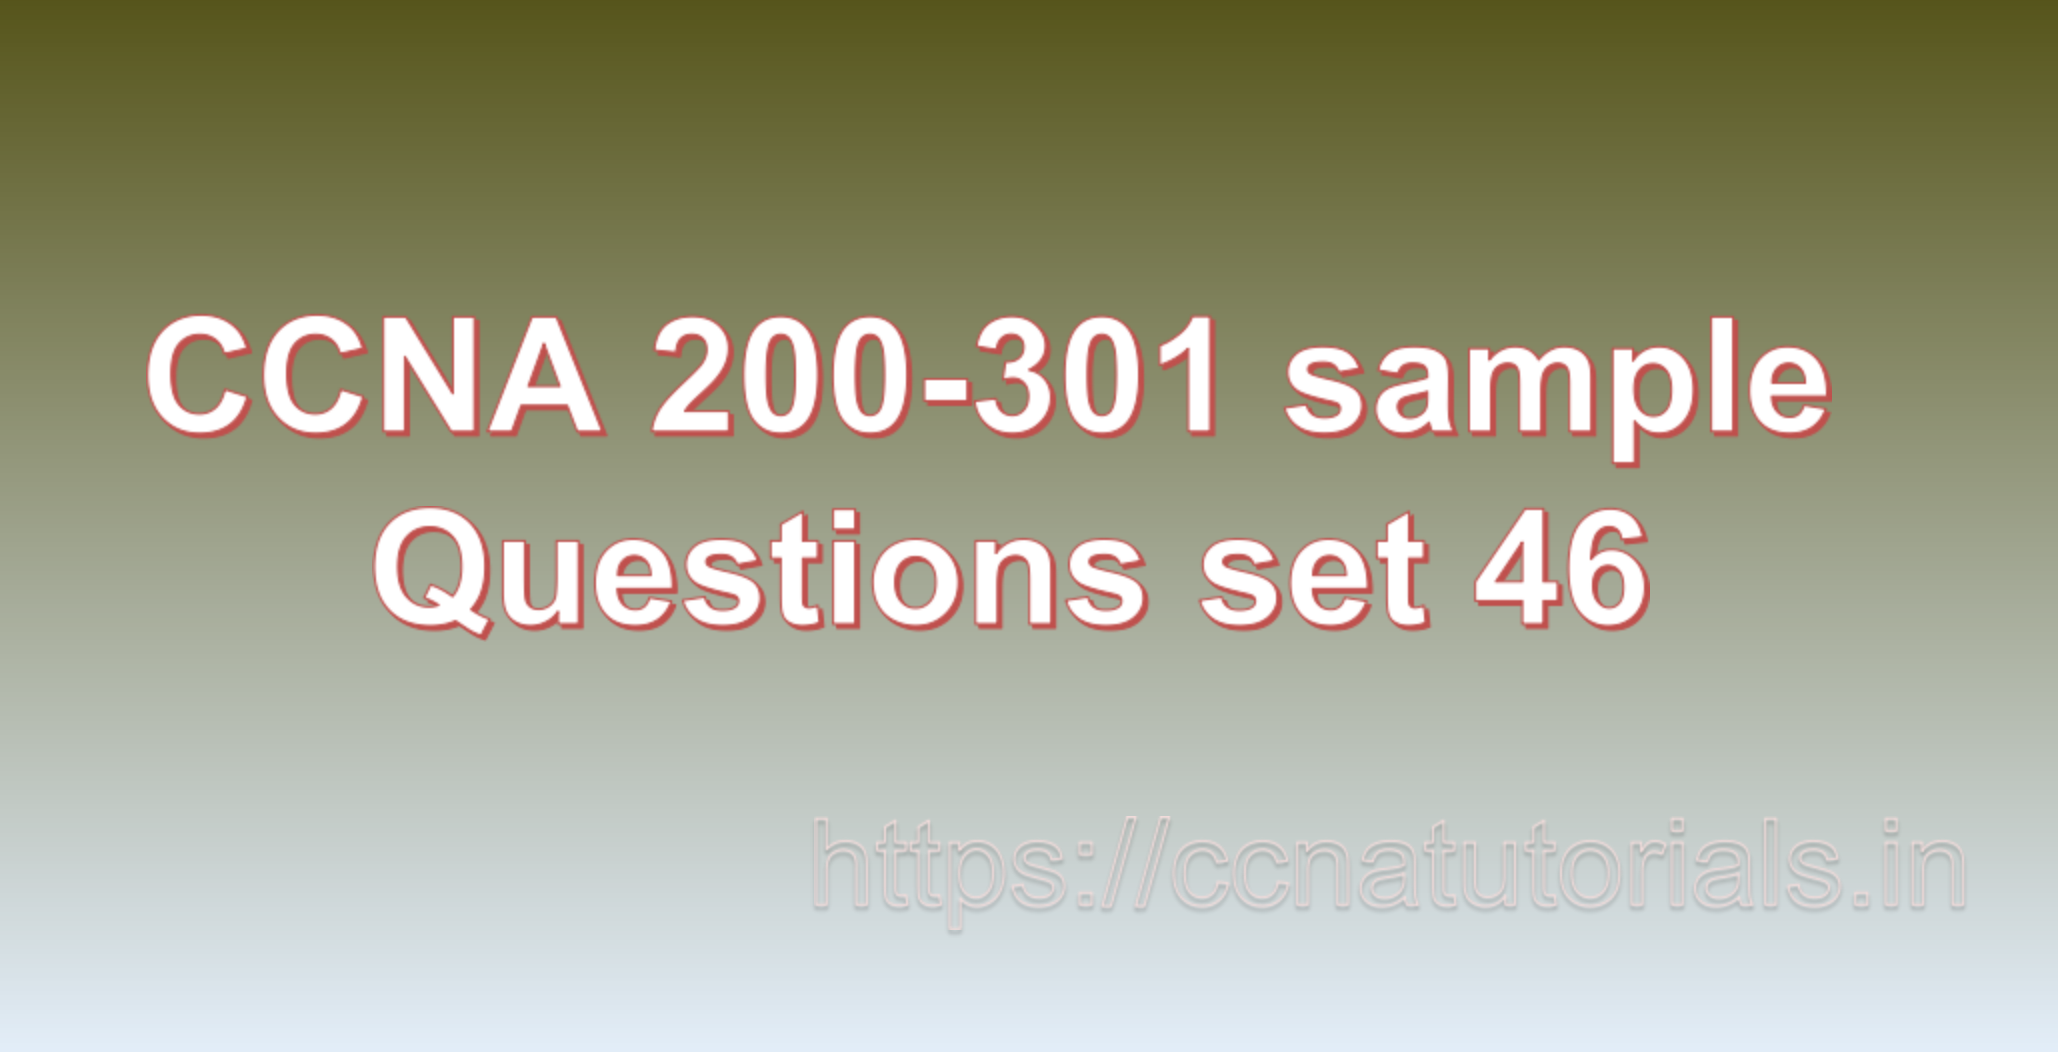 ccna sample questions set 46, ccna tutorials, CCNA Exam, ccna